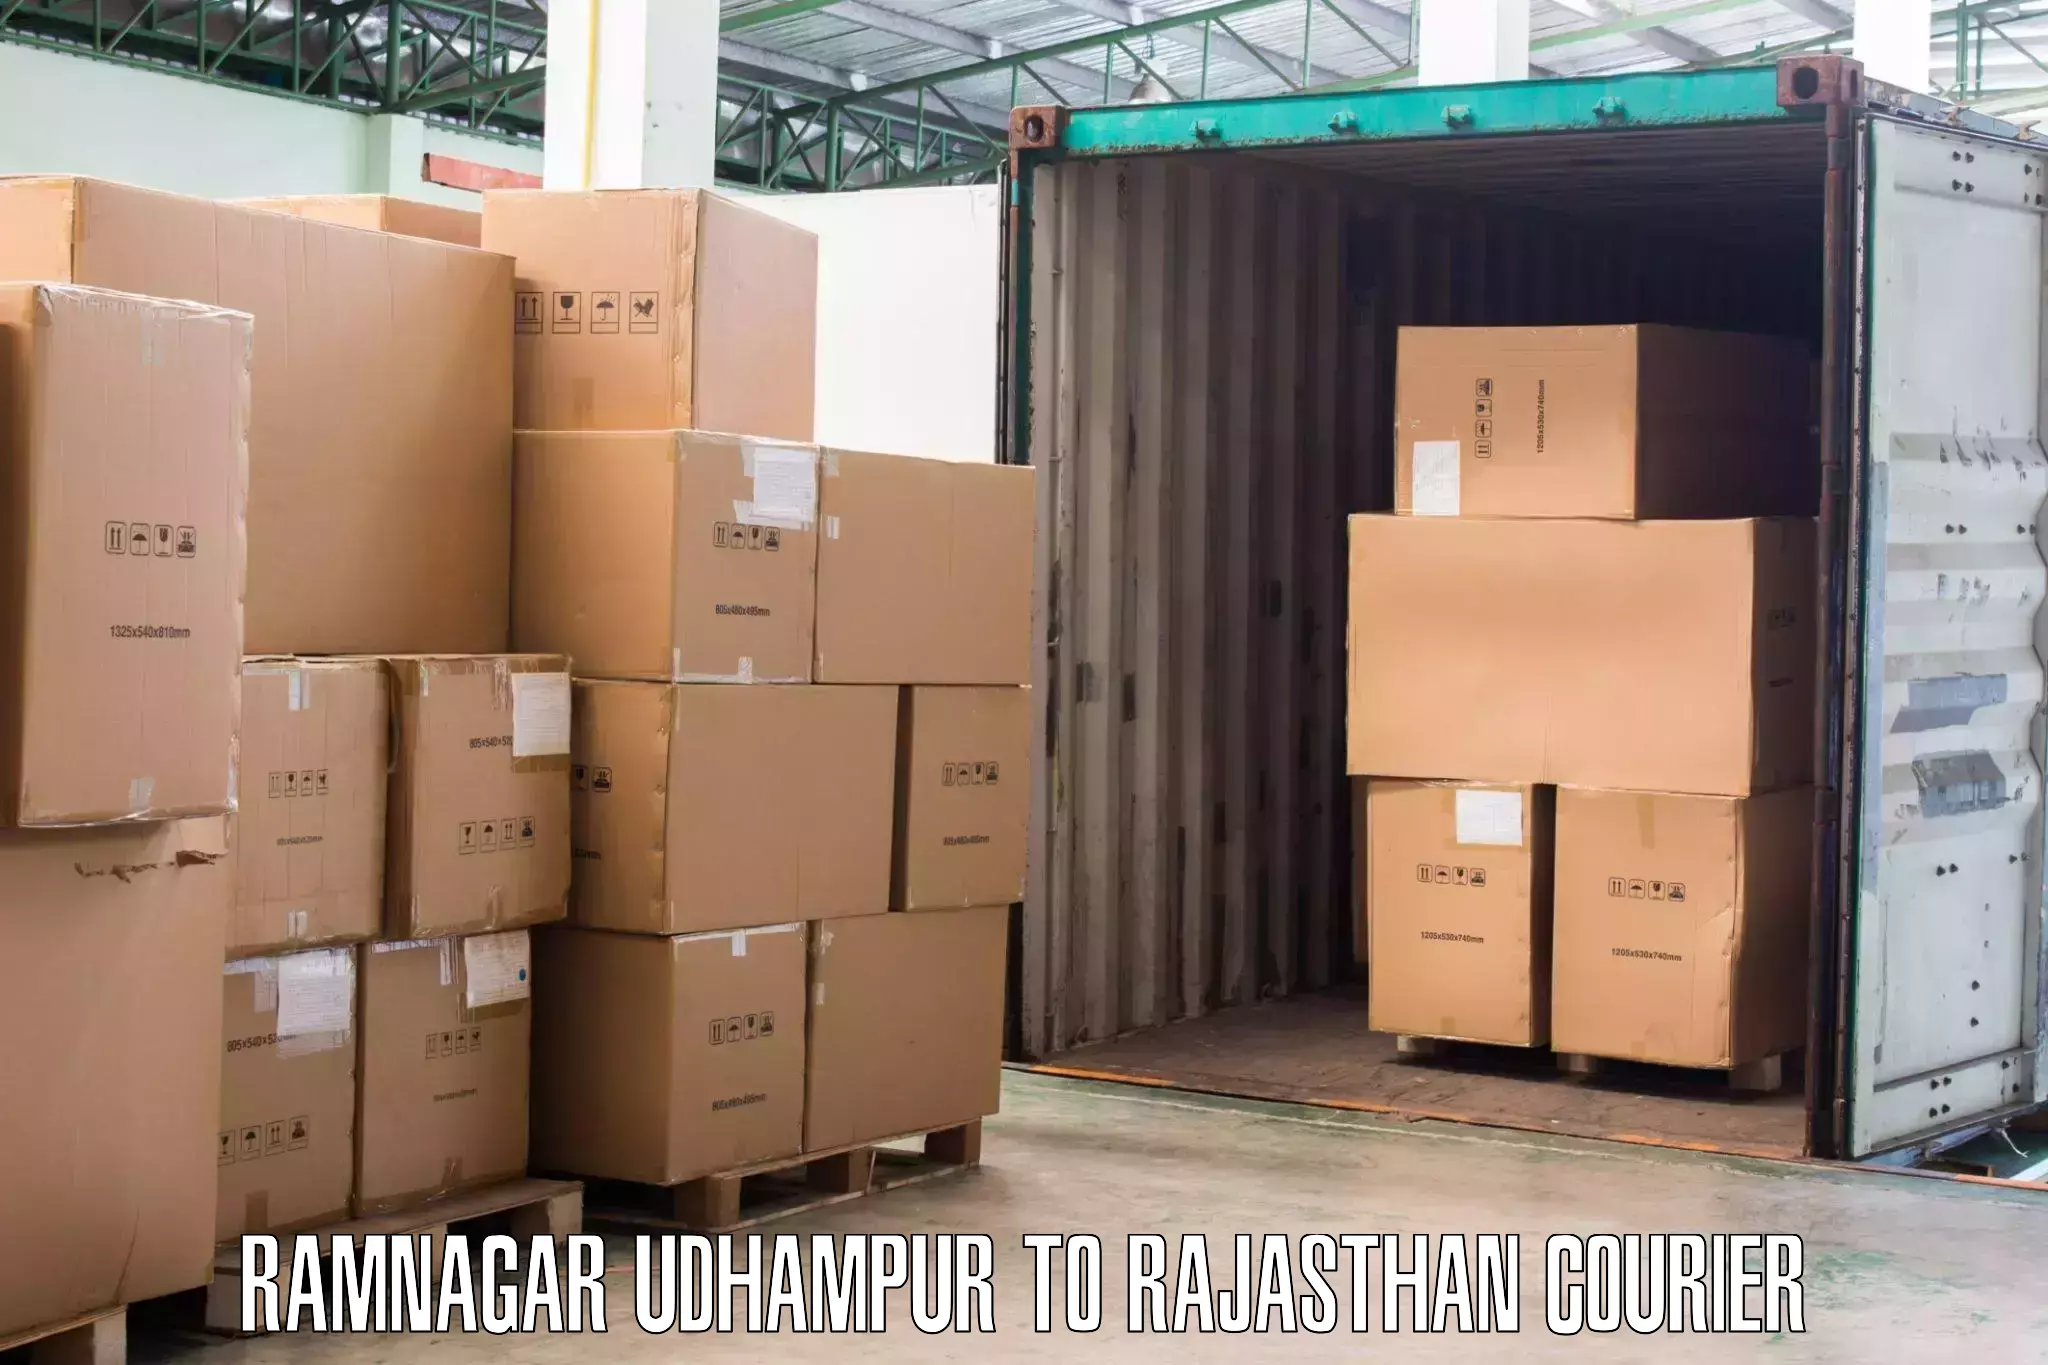 Furniture relocation experts Ramnagar Udhampur to Kherwara